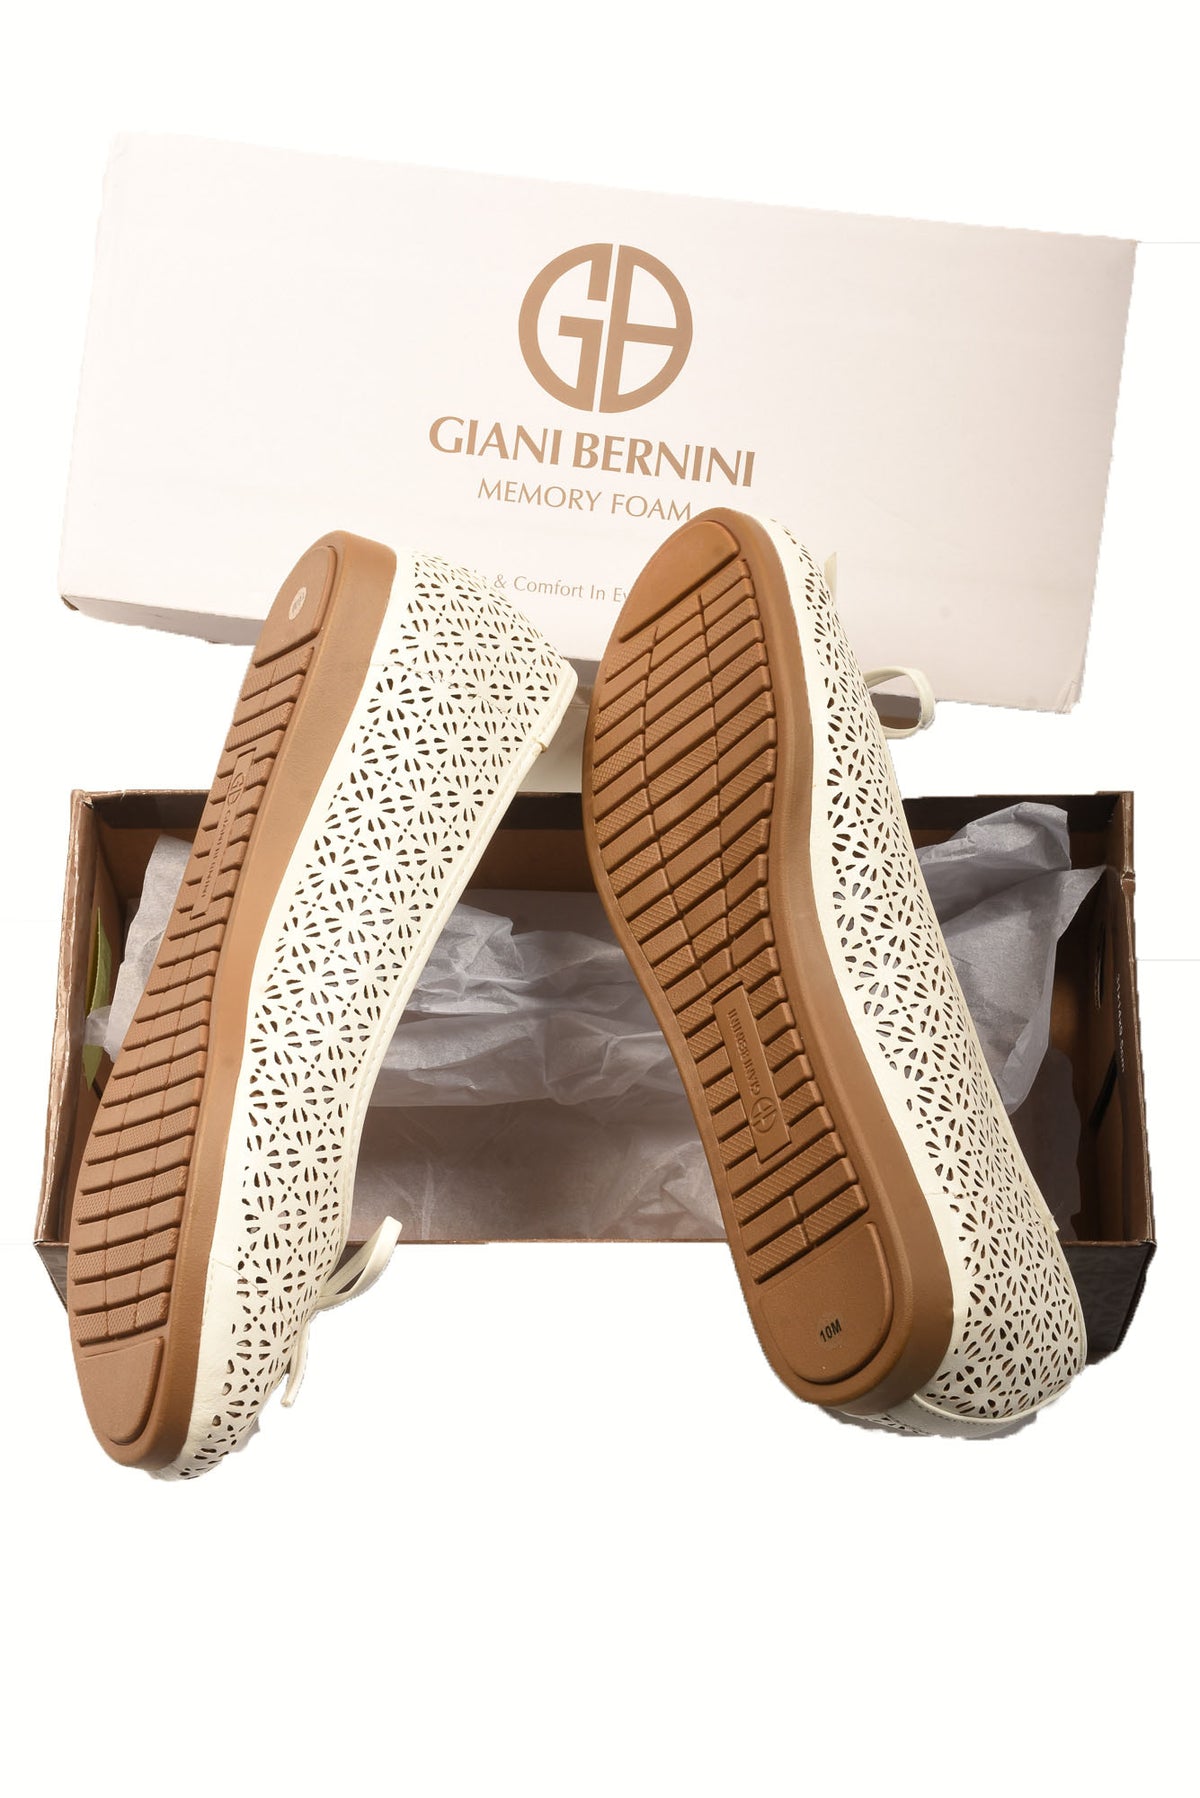 Giani Bernini Women's Shoes